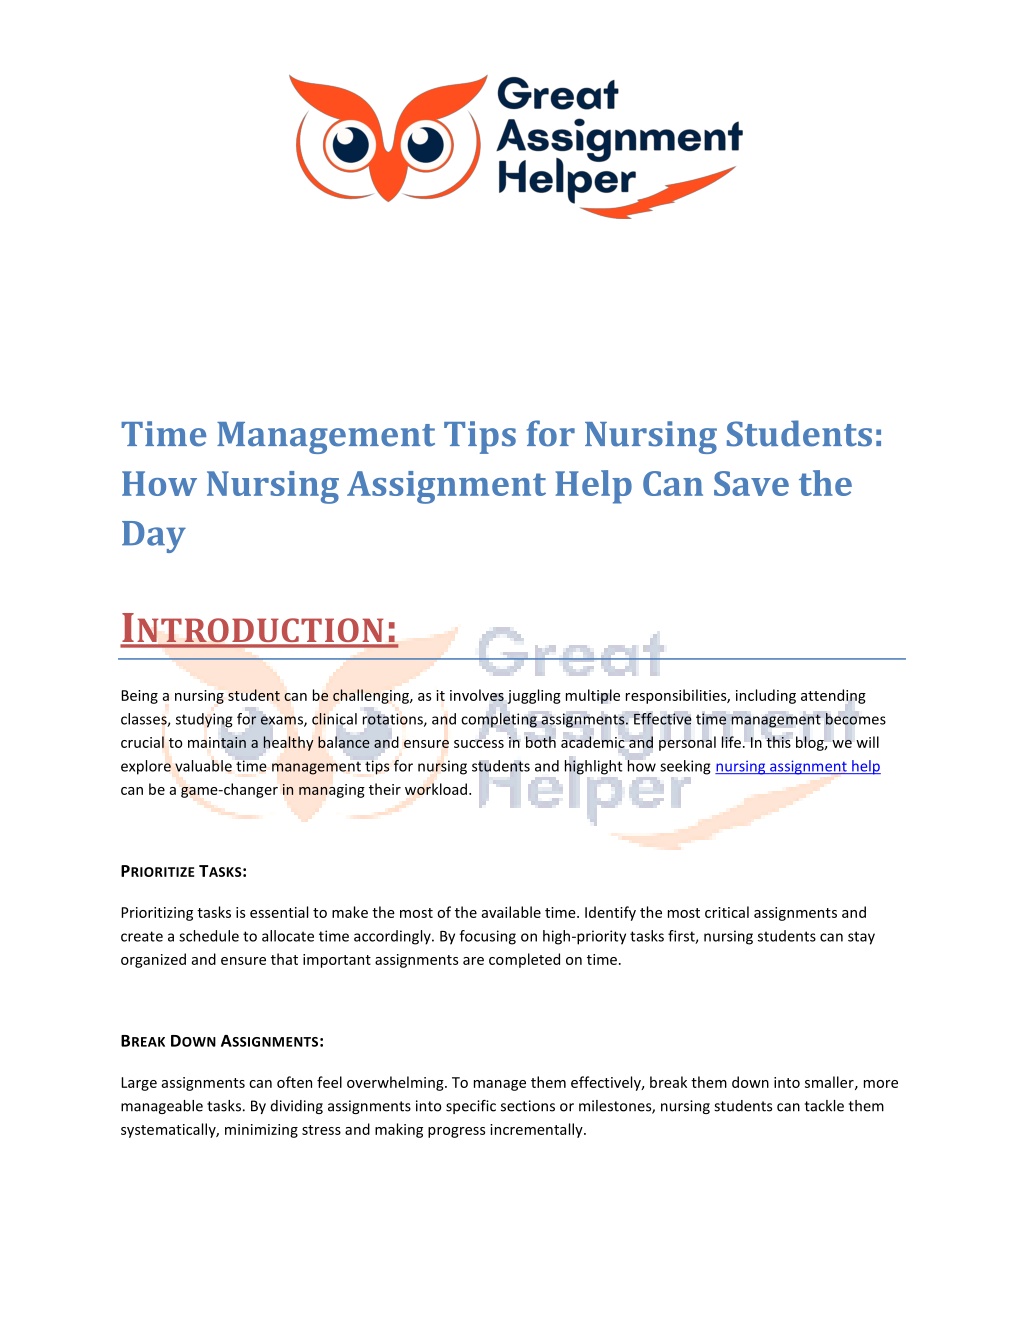 https://image7.slideserve.com/12312870/time-management-tips-for-nursing-students-l.jpg